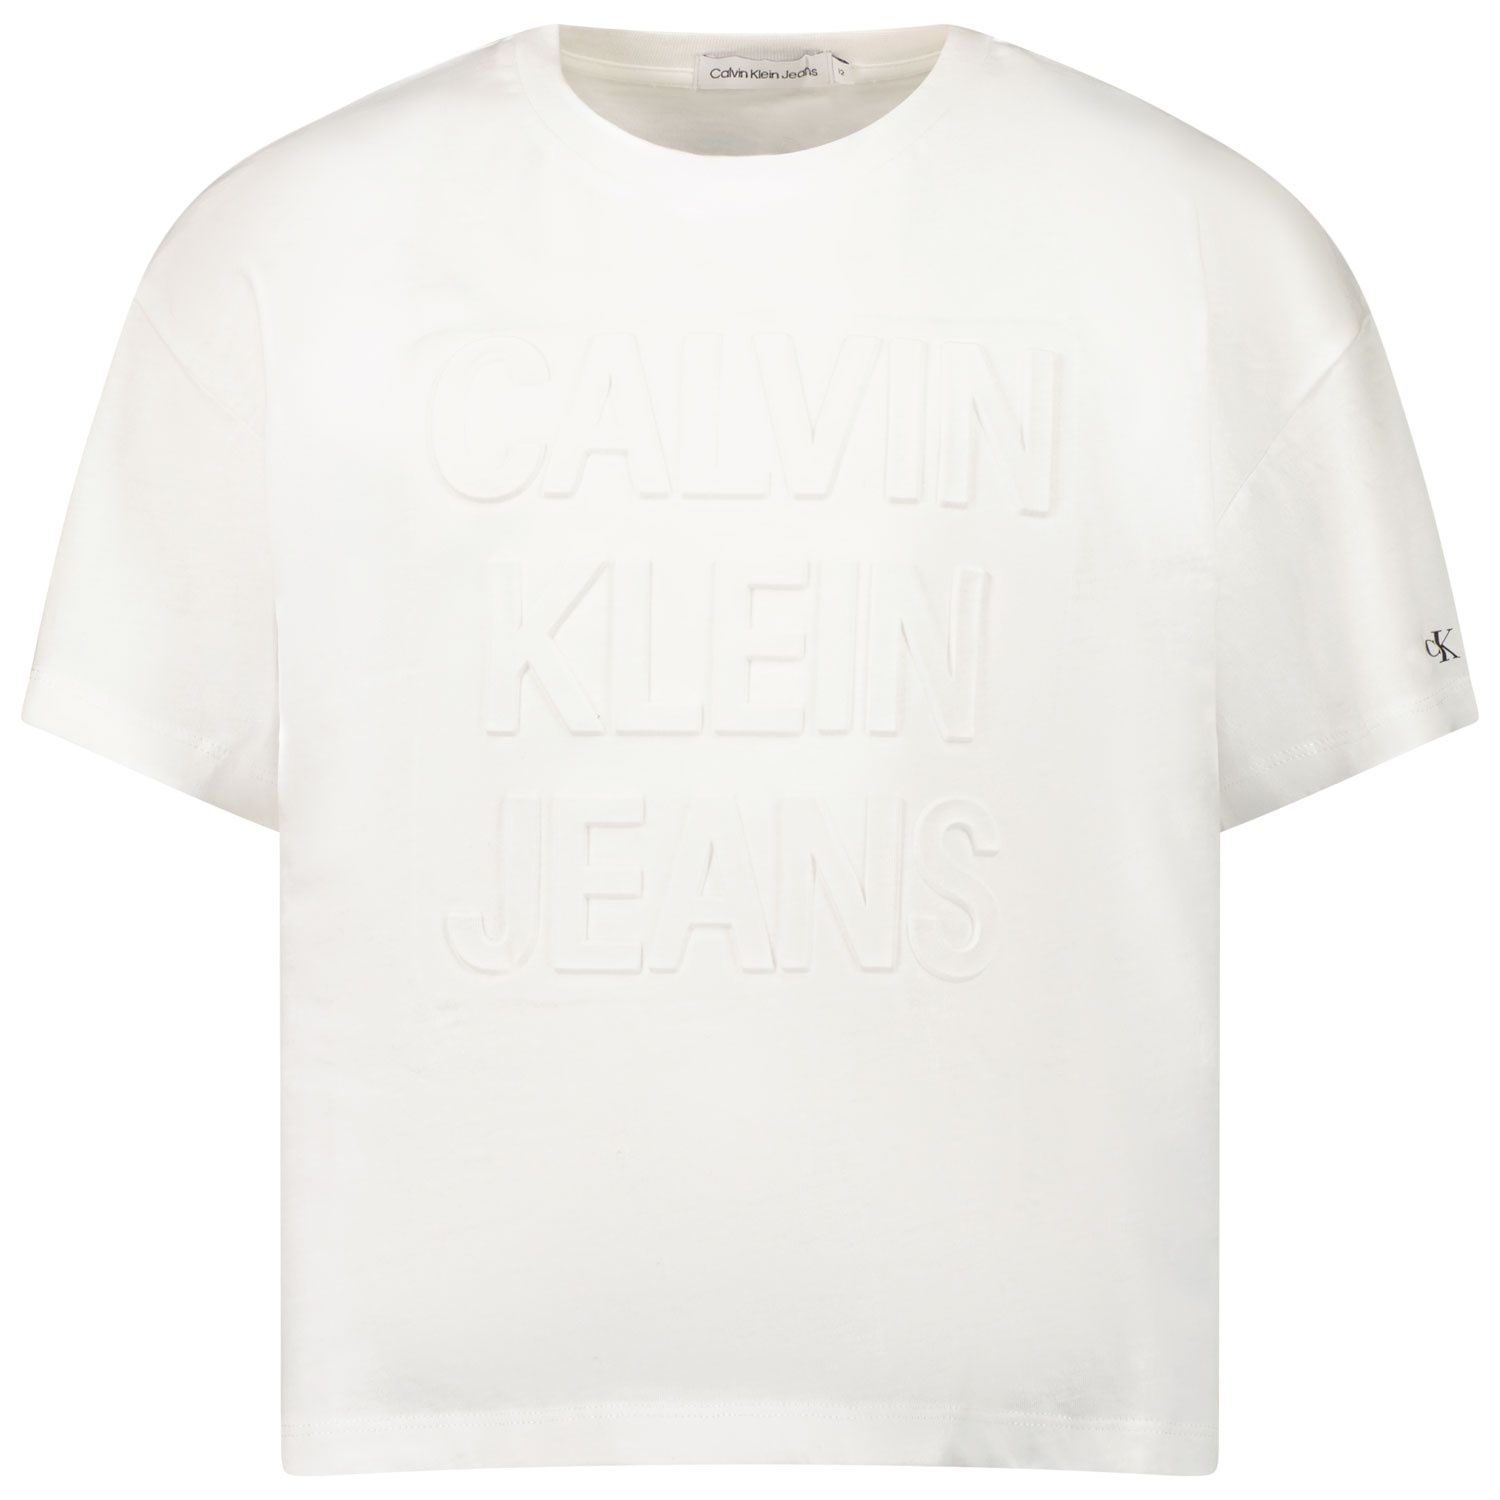 Afbeelding van Calvin Klein IG0IG01293 kinder t-shirt wit